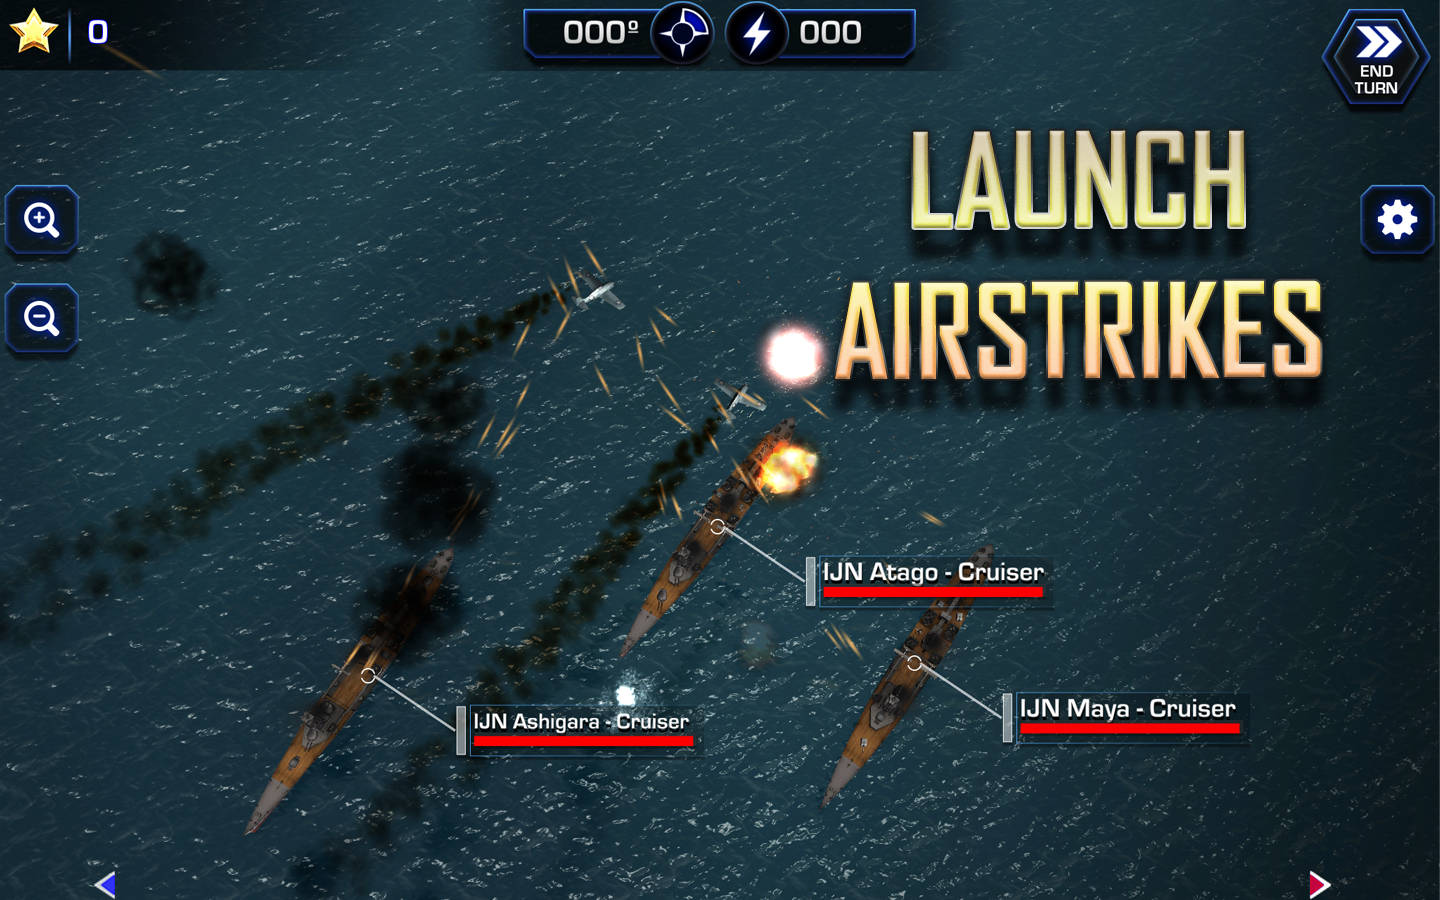    Battle Fleet 2- screenshot  